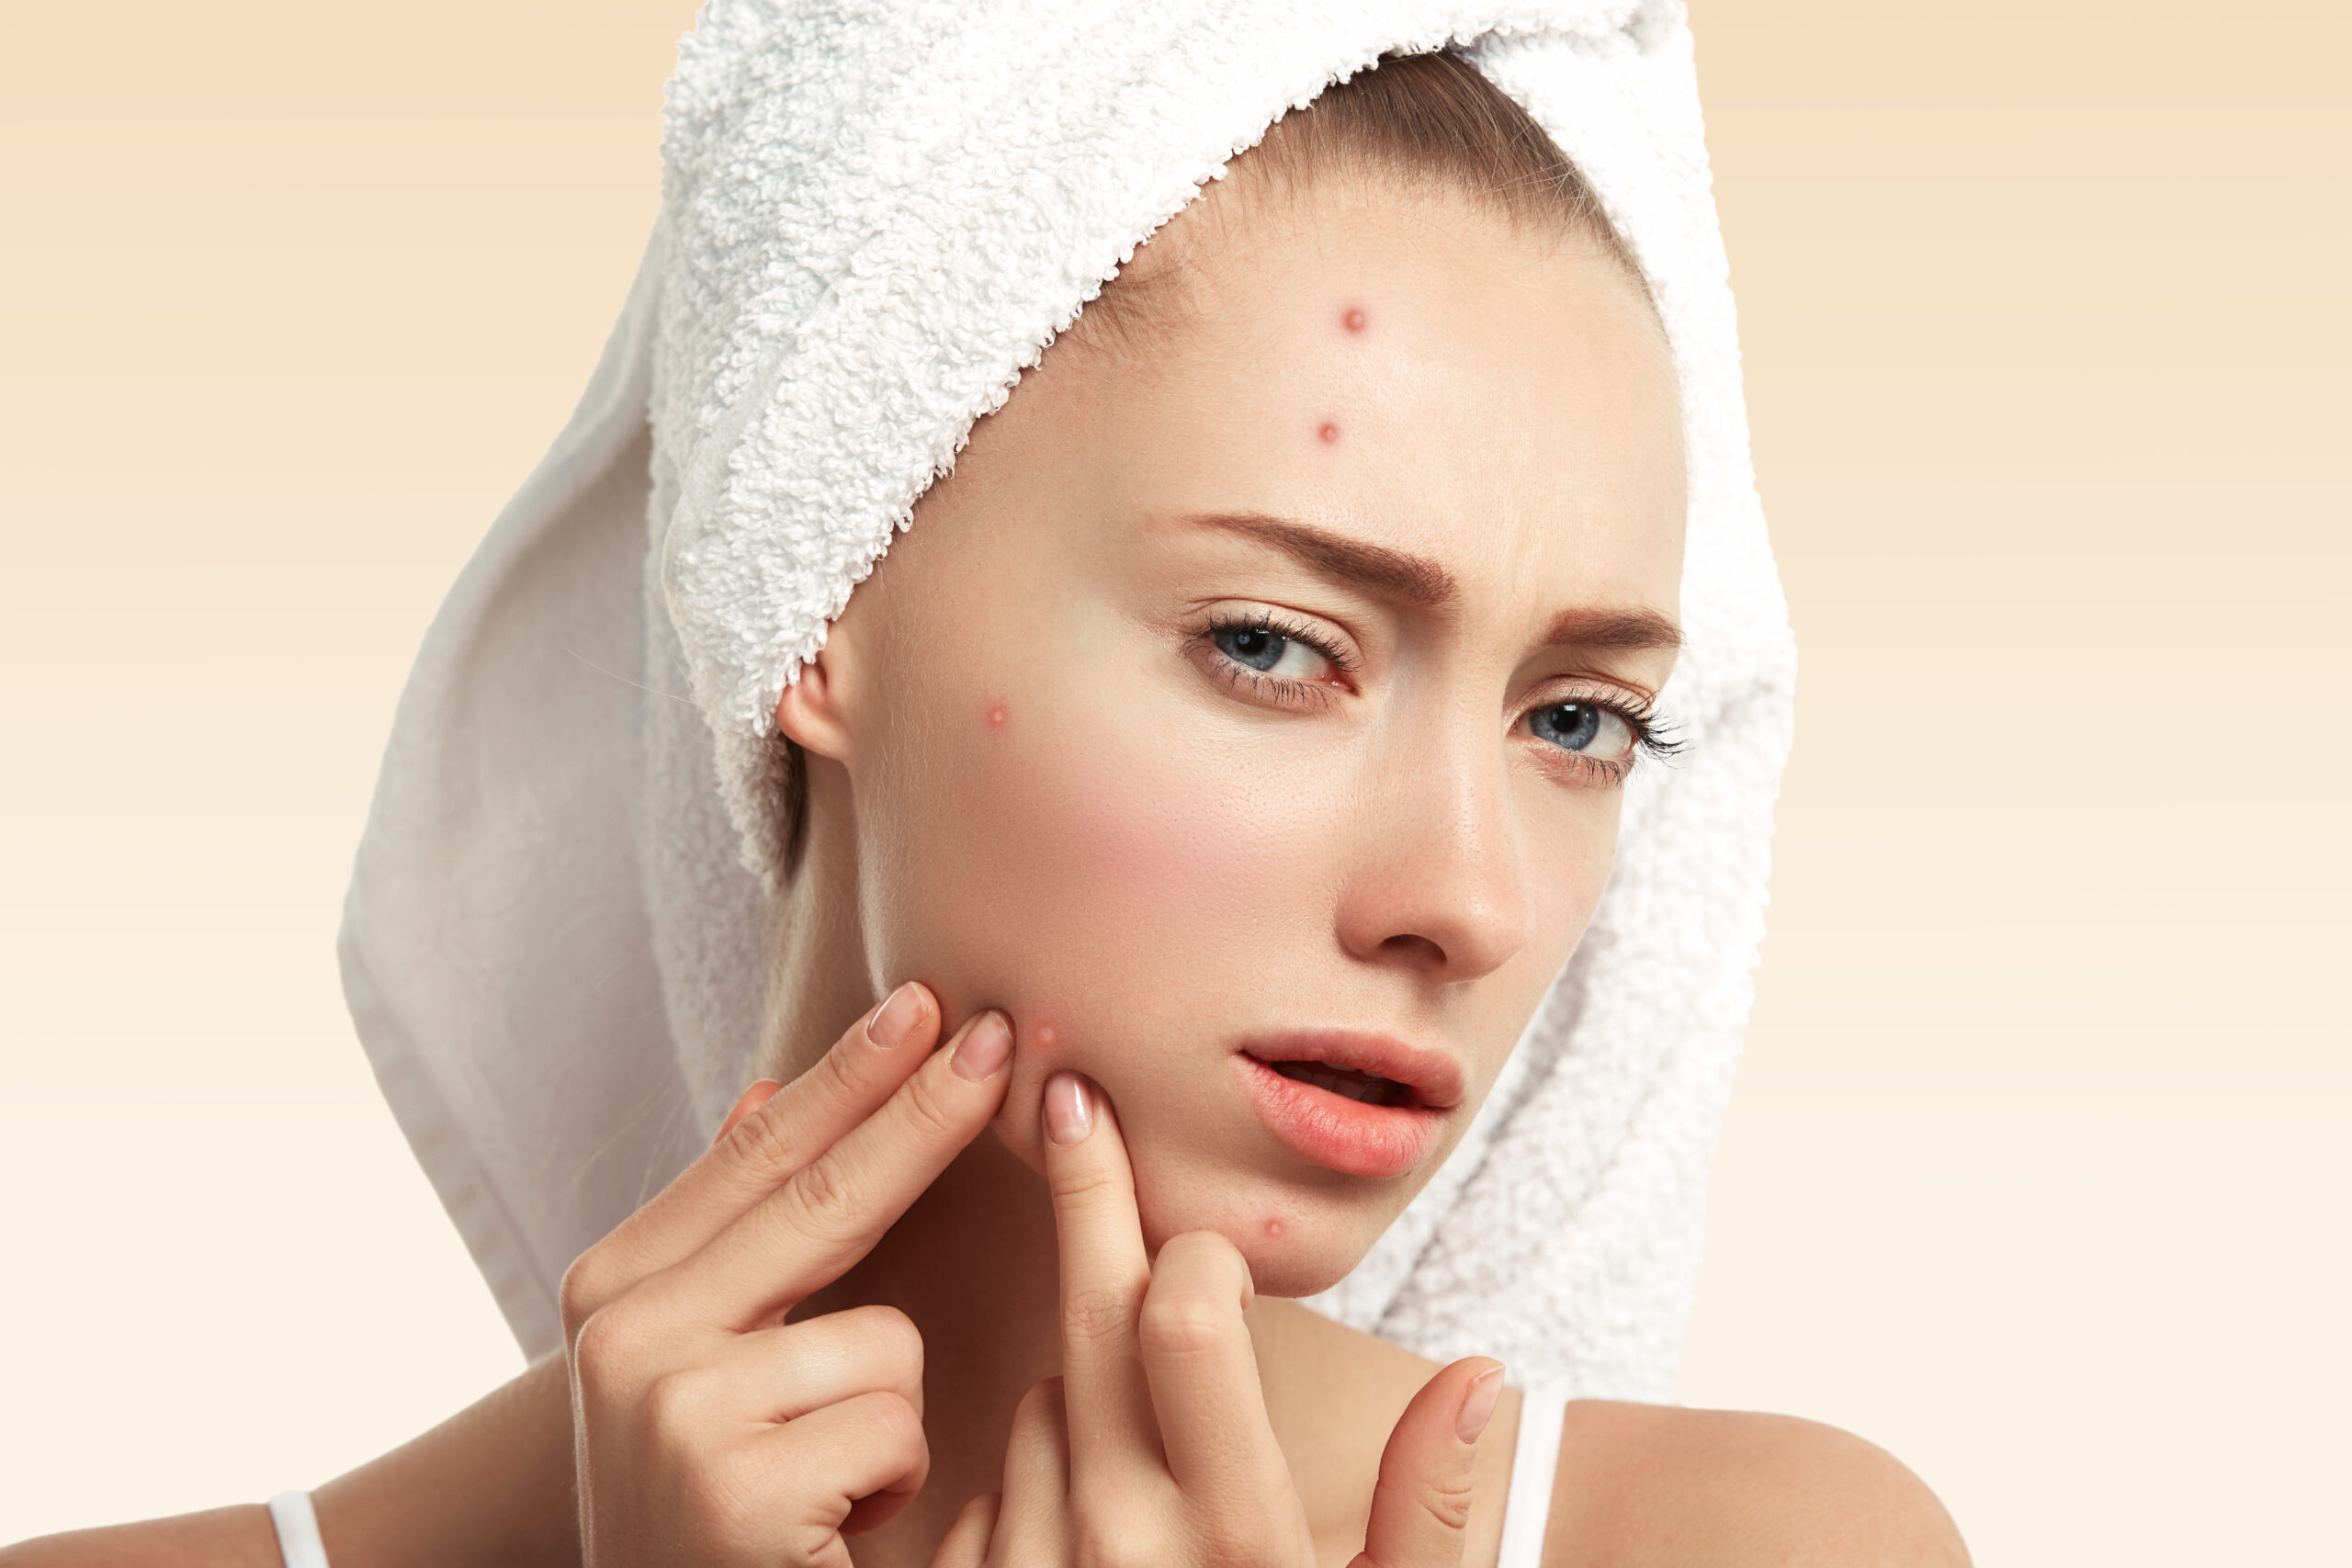 Save your face from Pimples || पिम्पल्स को हटाने के लिए यहां 10 बिंदुओं में विस्तृत जानकारी दी गई है: